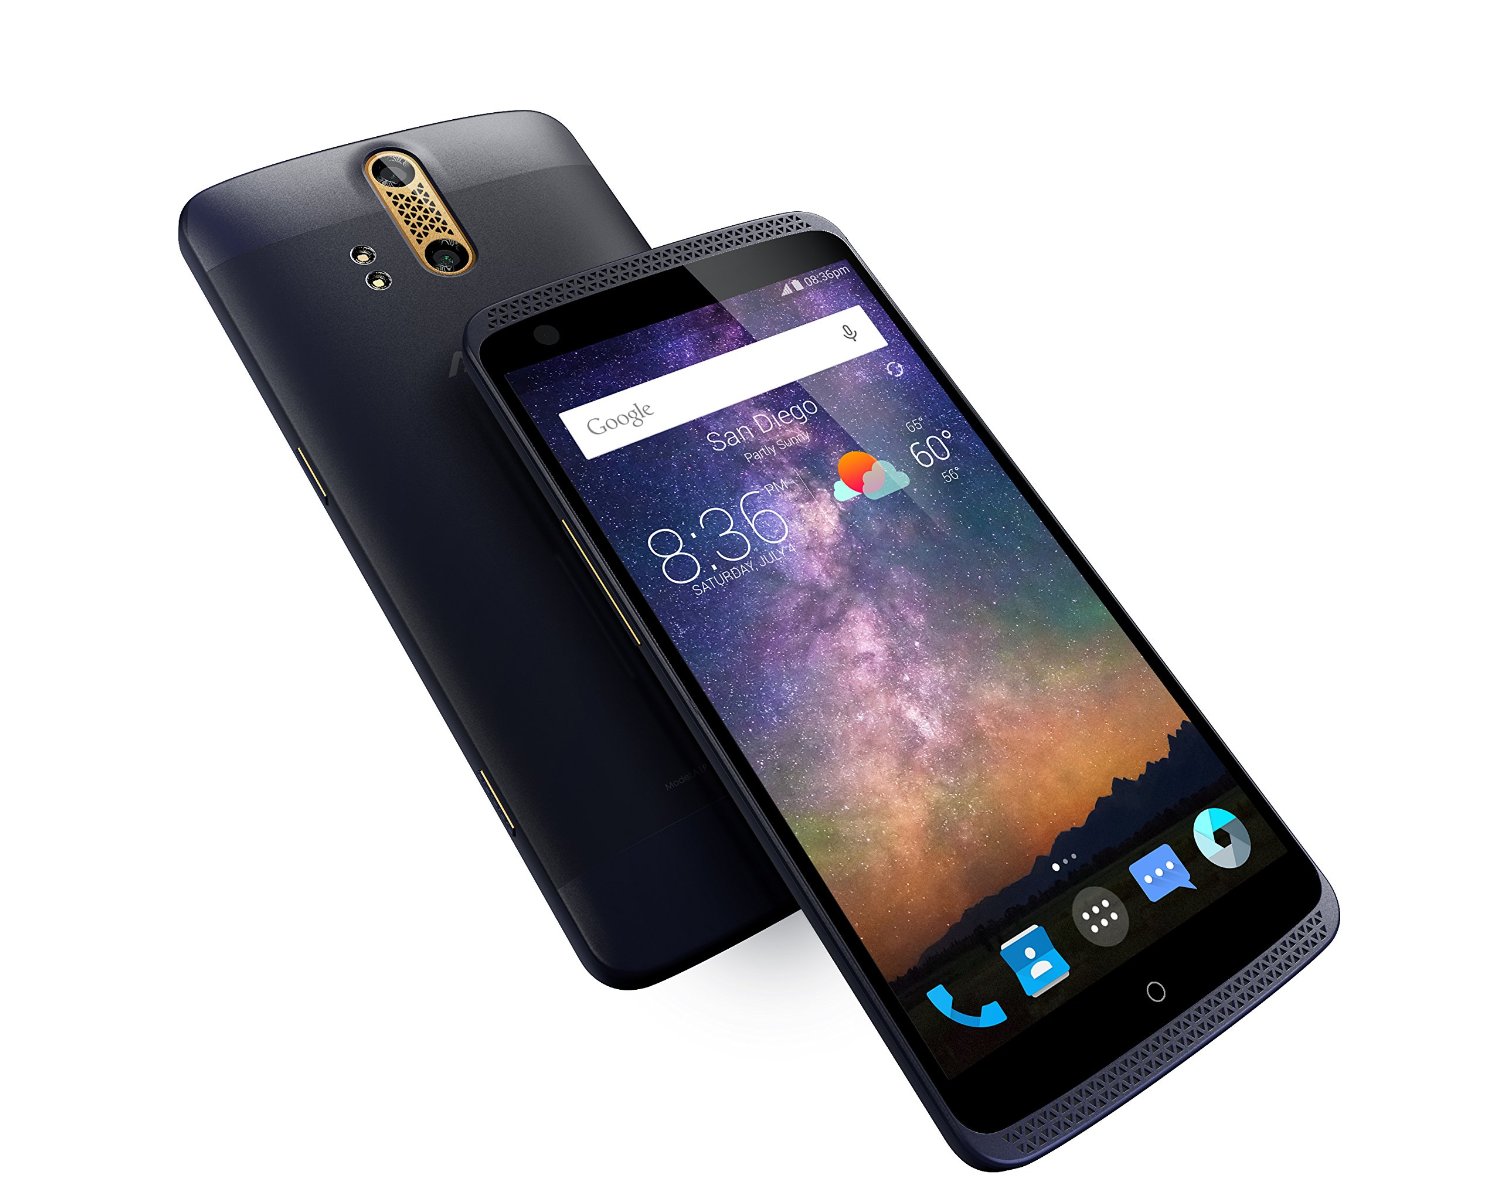 ZTE-Axon-Phone